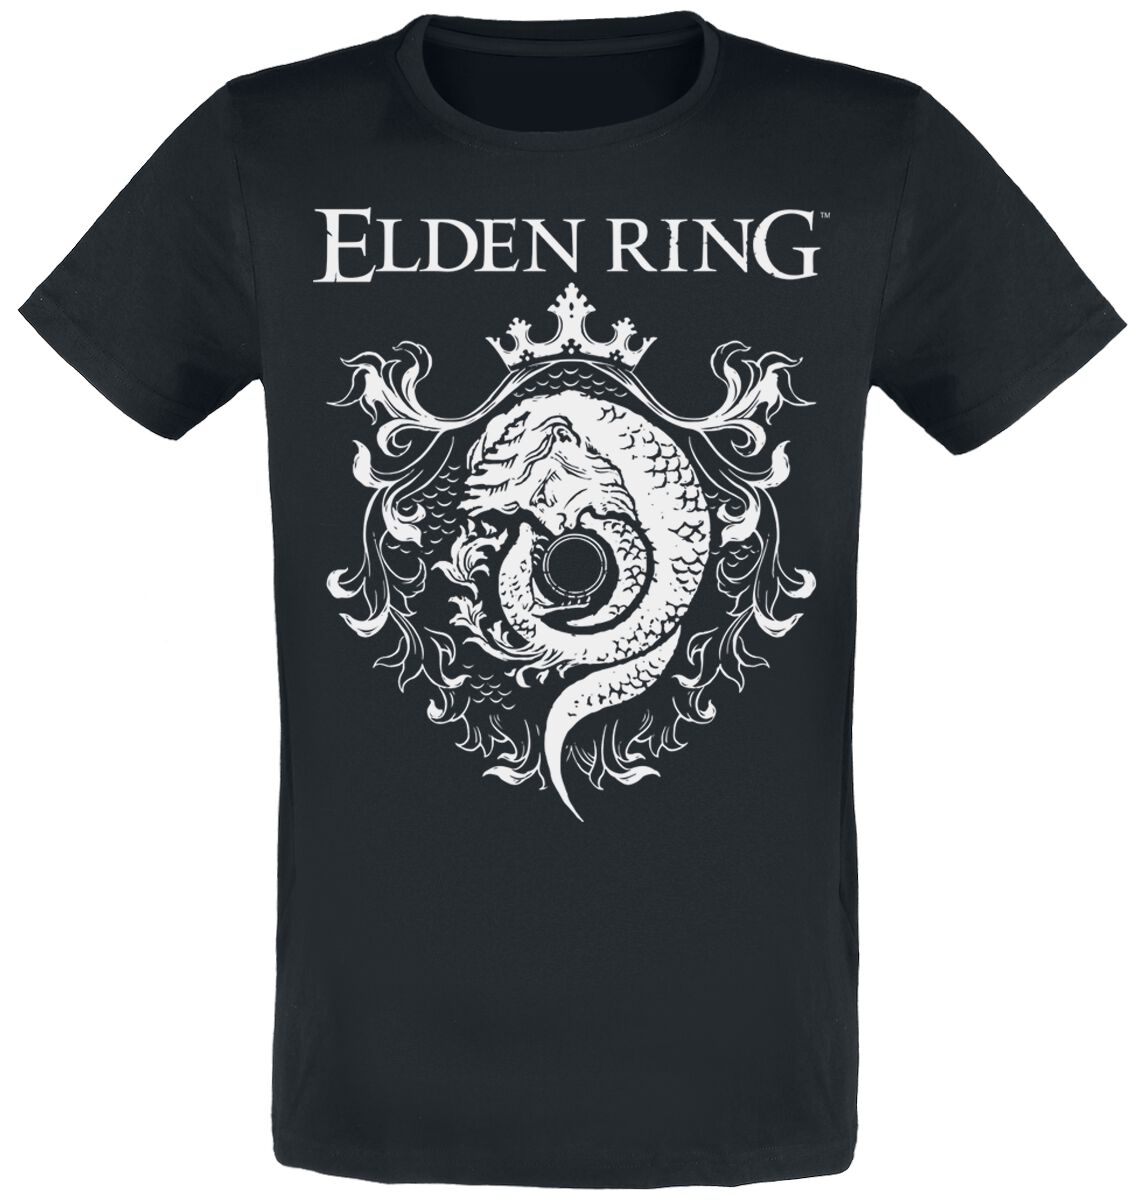 Elden Ring - Gaming T-Shirt - Crest - S bis XXL - für Männer - Größe S - schwarz  - EMP exklusives Merchandise!